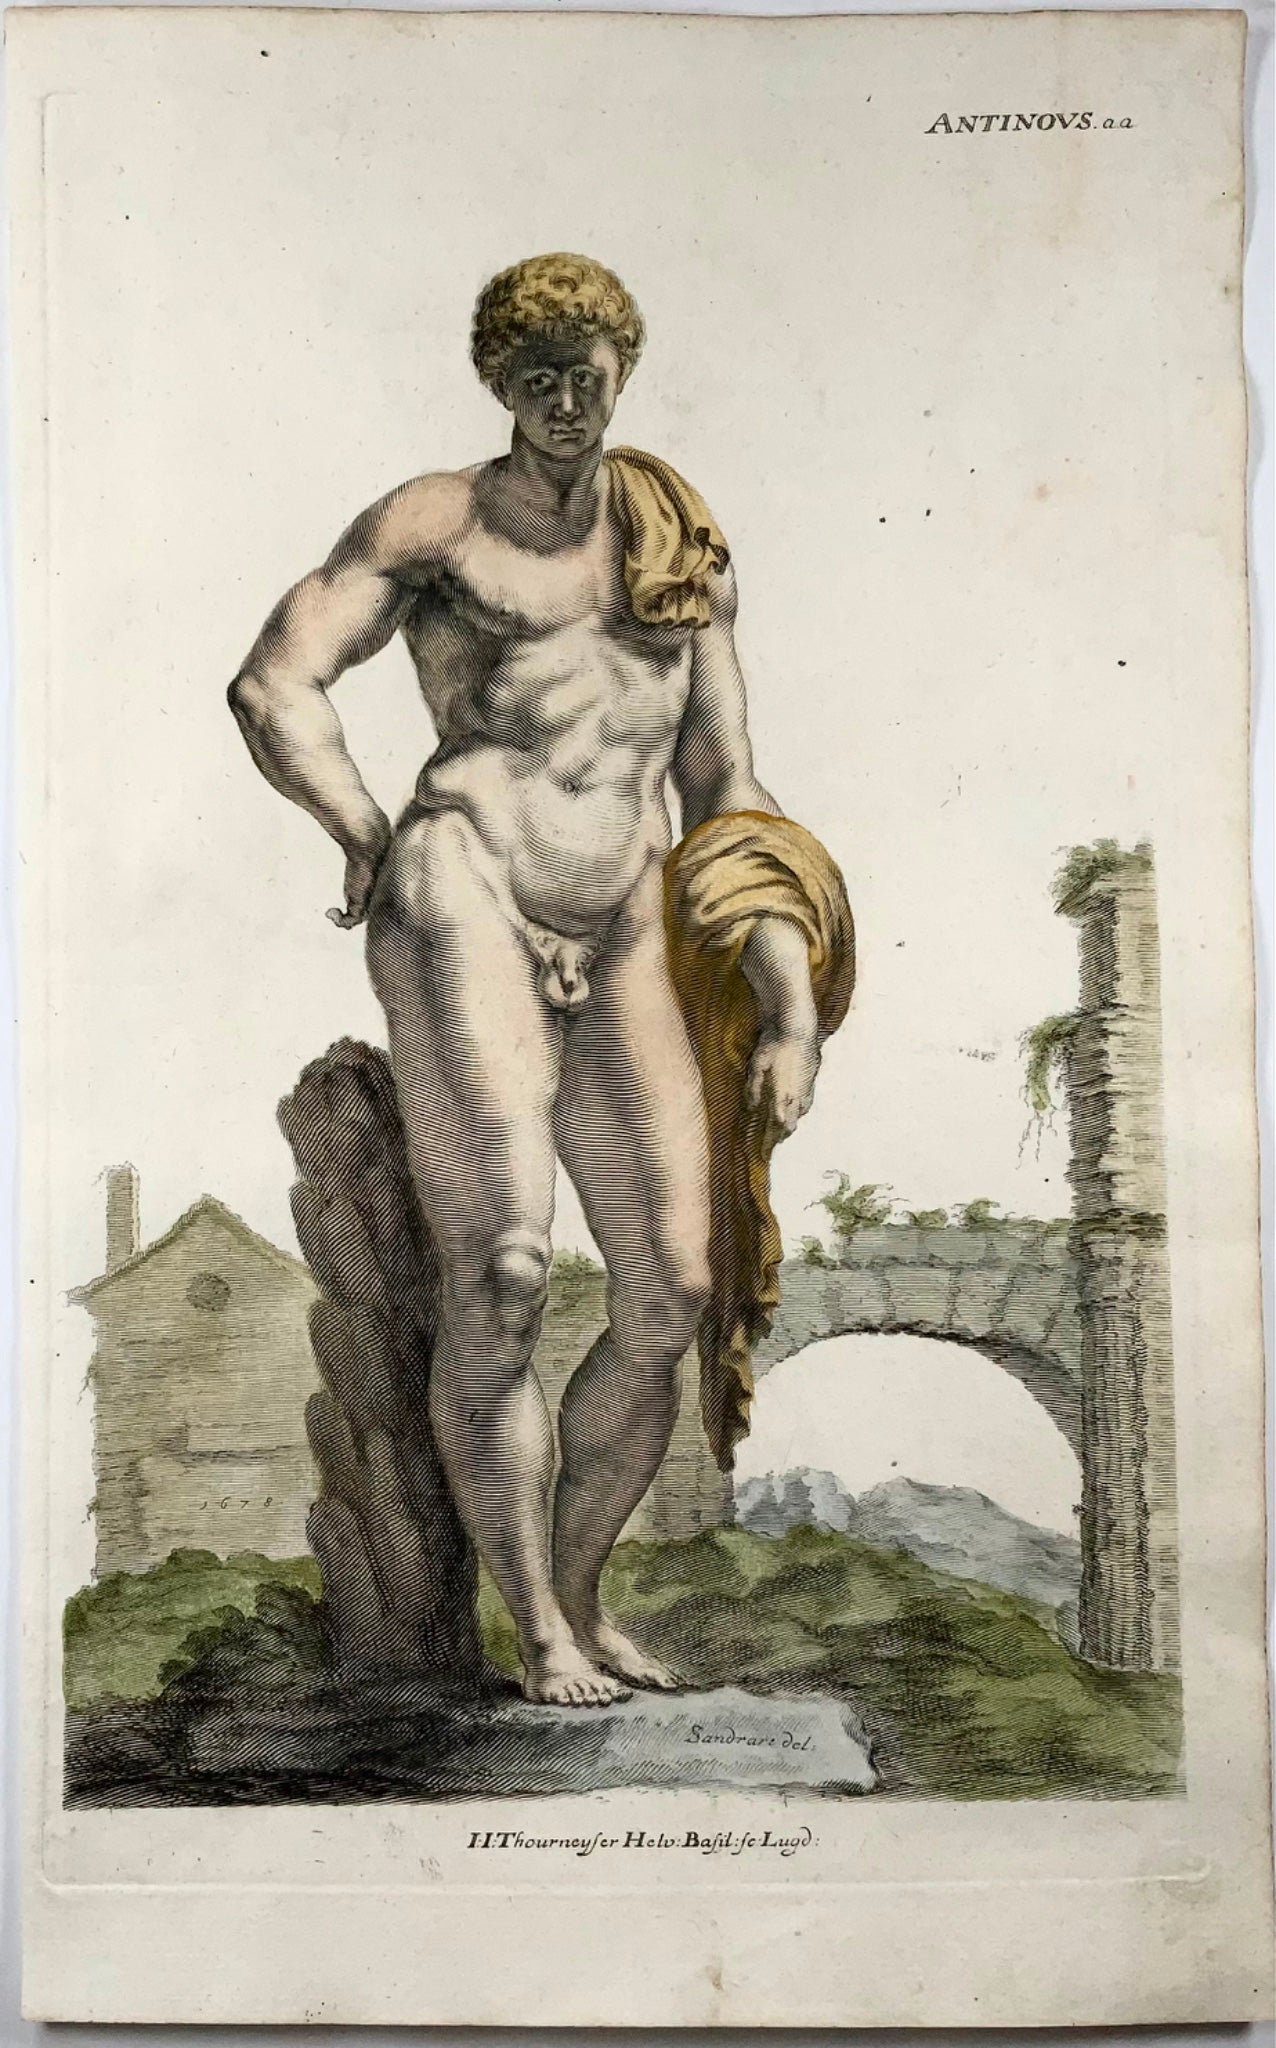 1676 Thourneysen da Sandrart Antinoo, amante dell'imperatore romano Adriano 